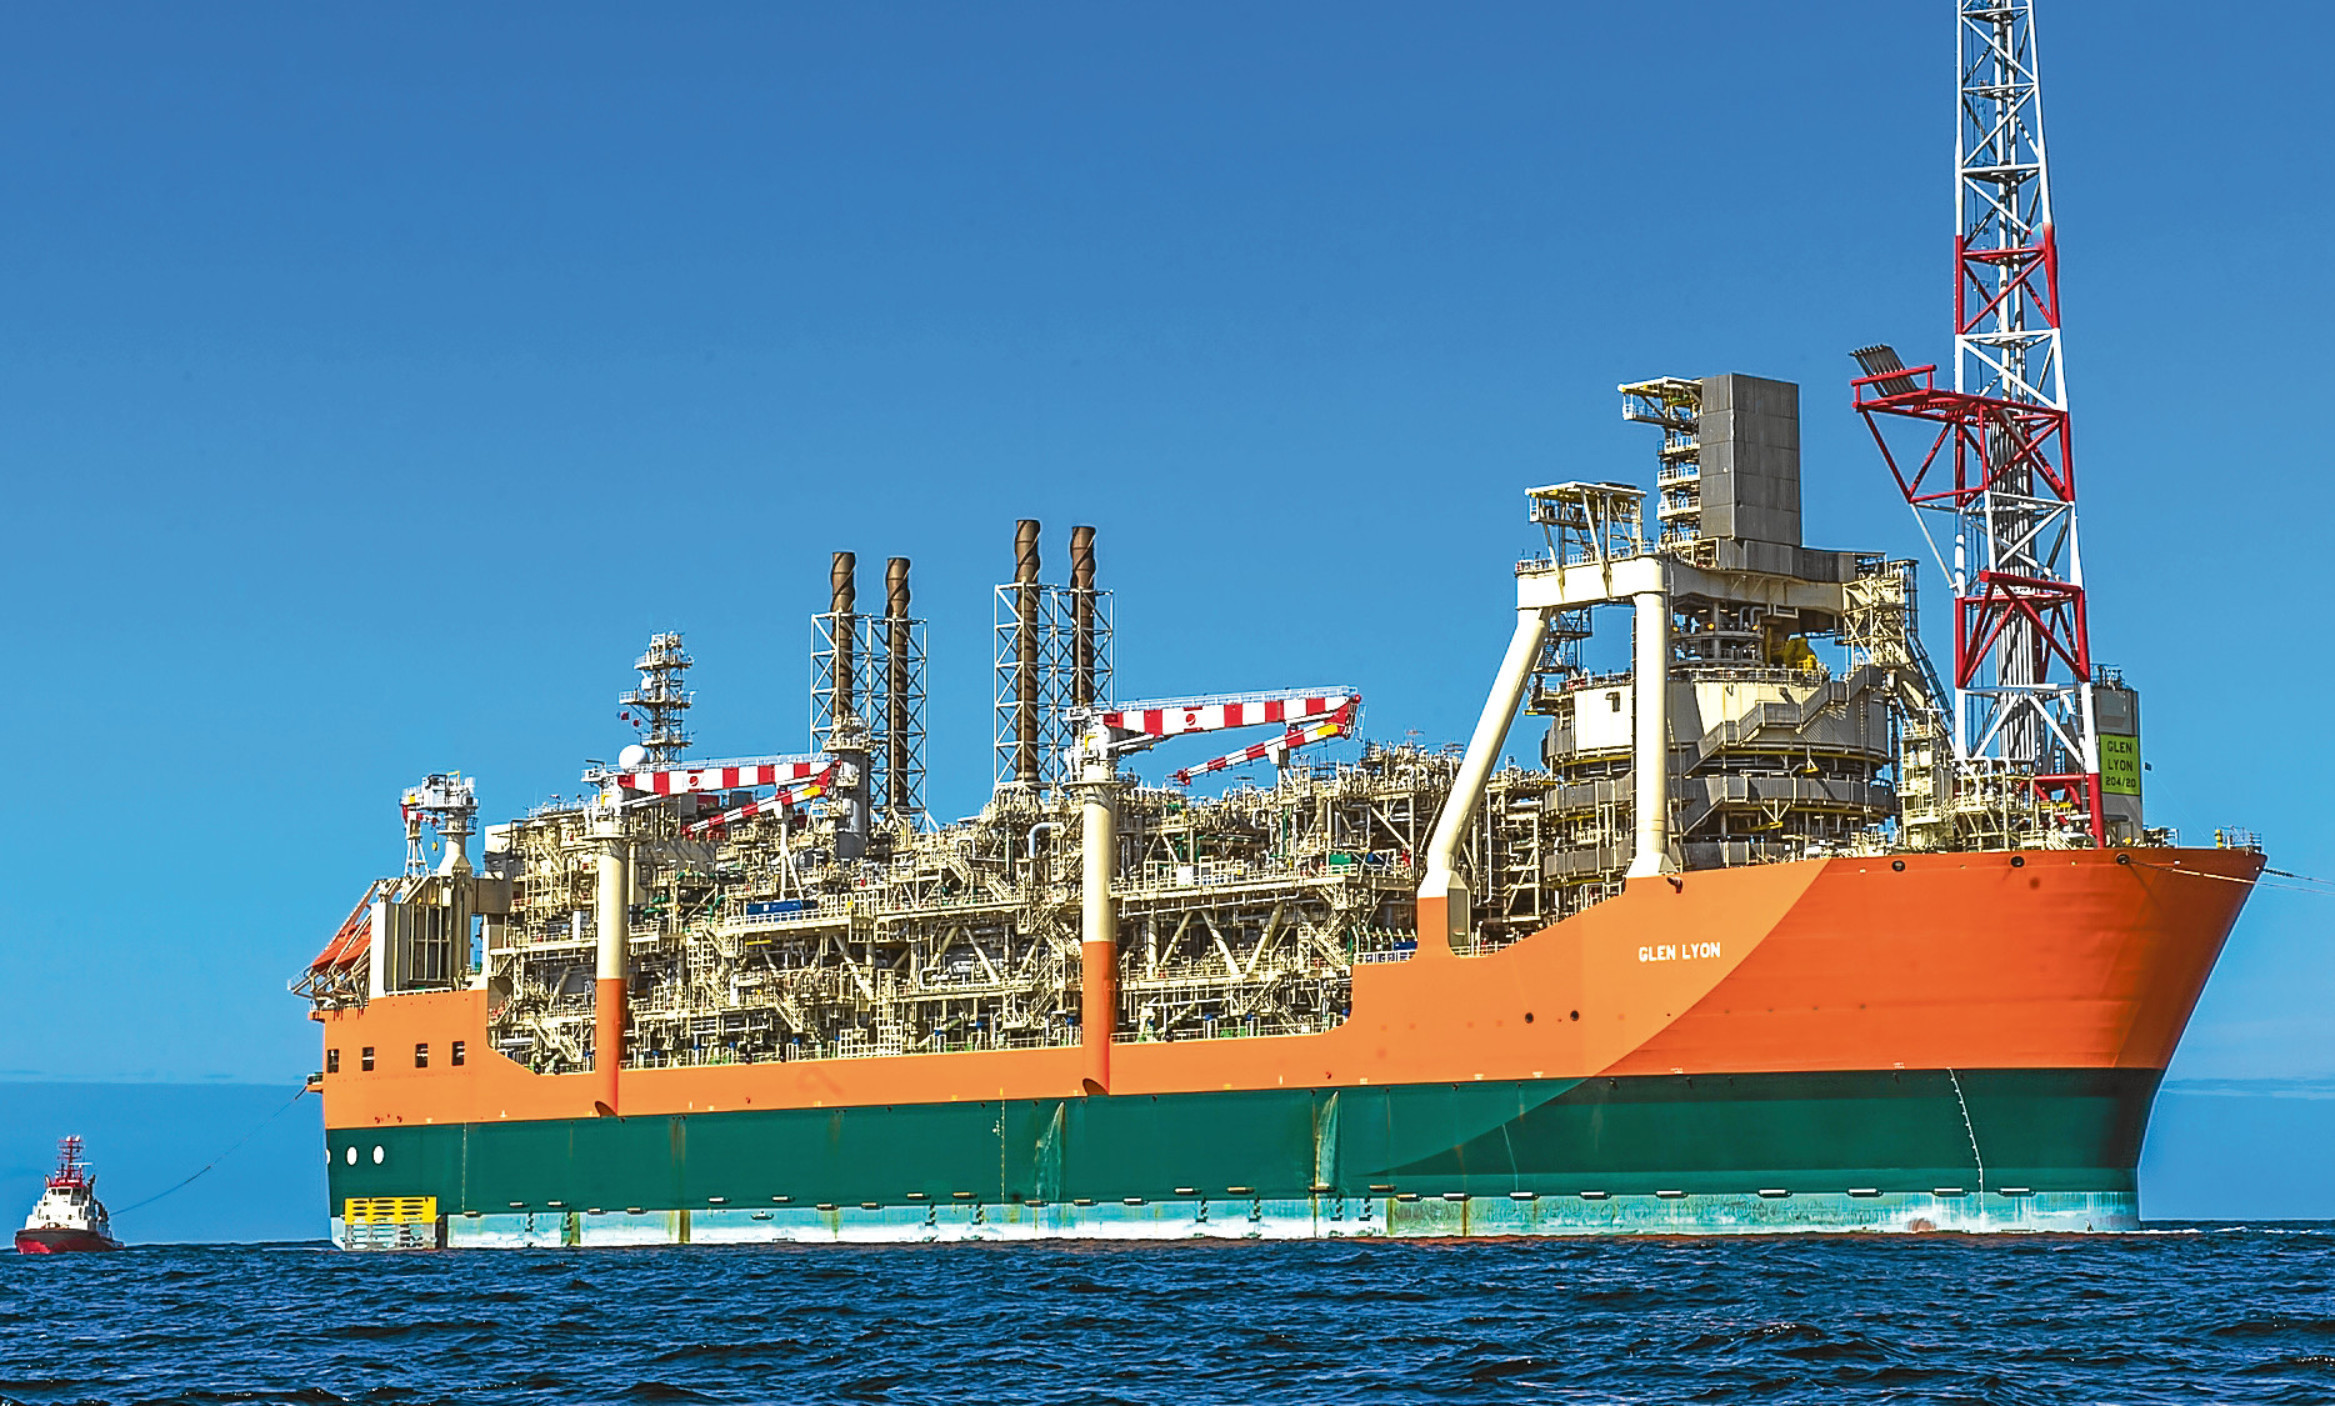 The Glen Lyon FPSO servicing the Quad 204 oil field in the North Sea